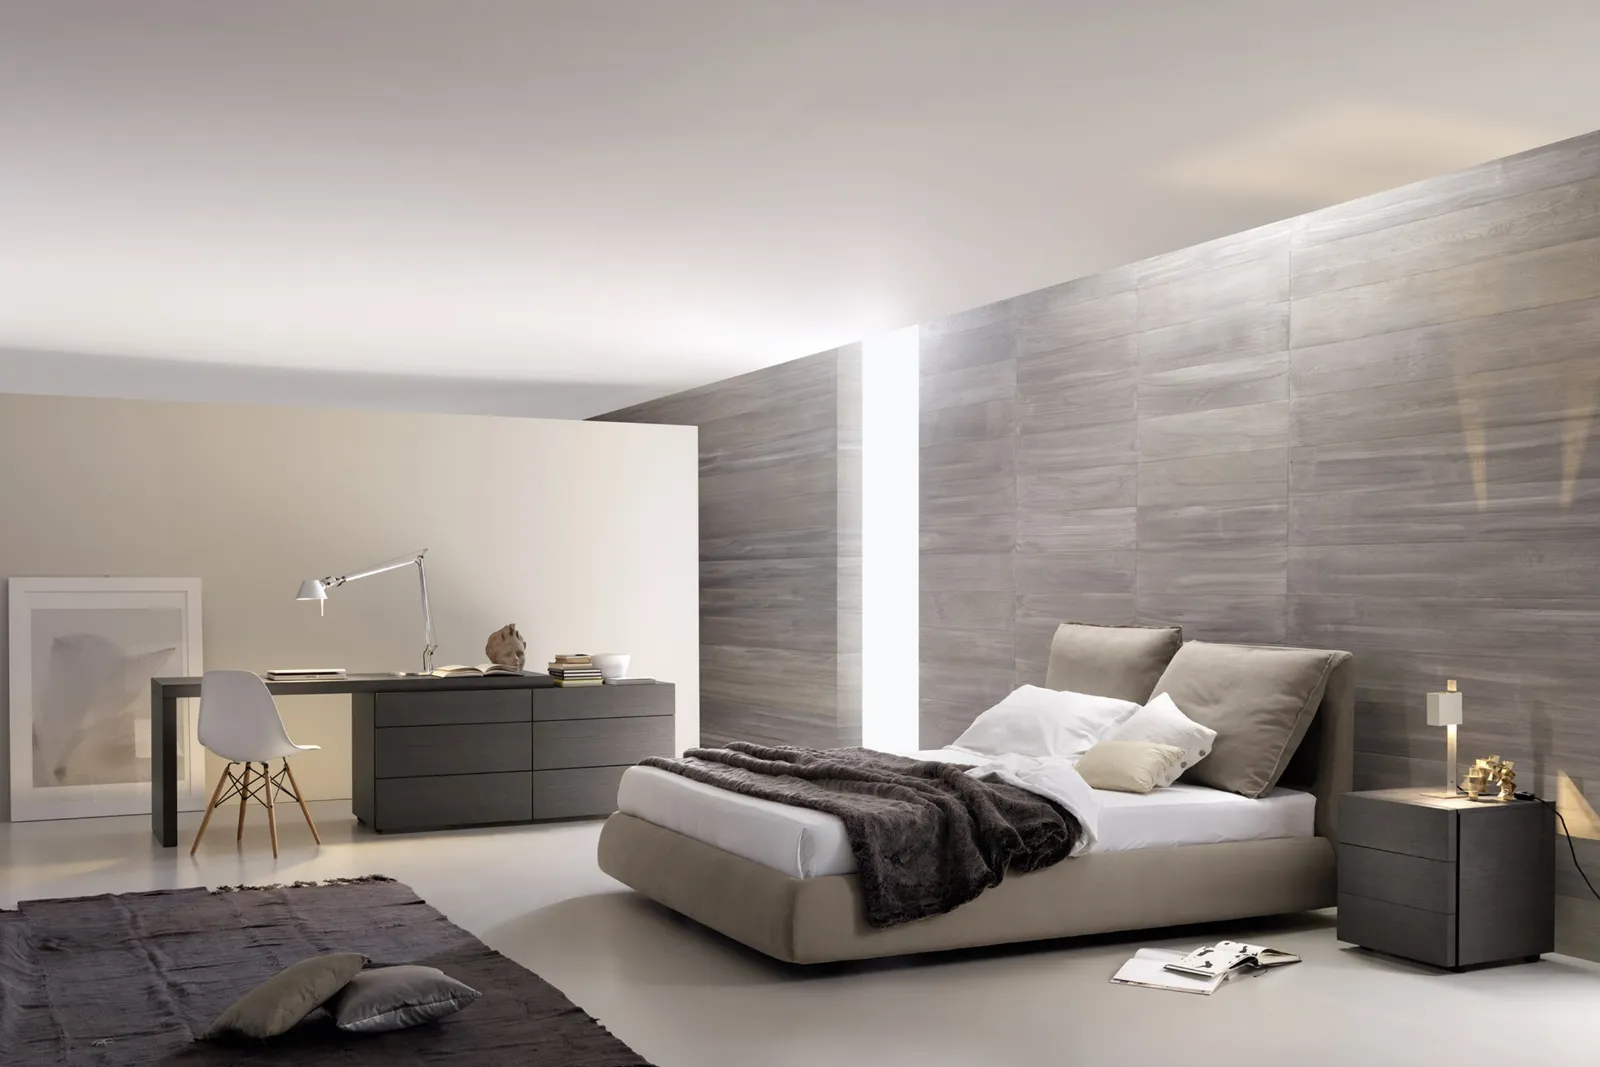 Camera letto moderna camere da letto for Letto minimalista